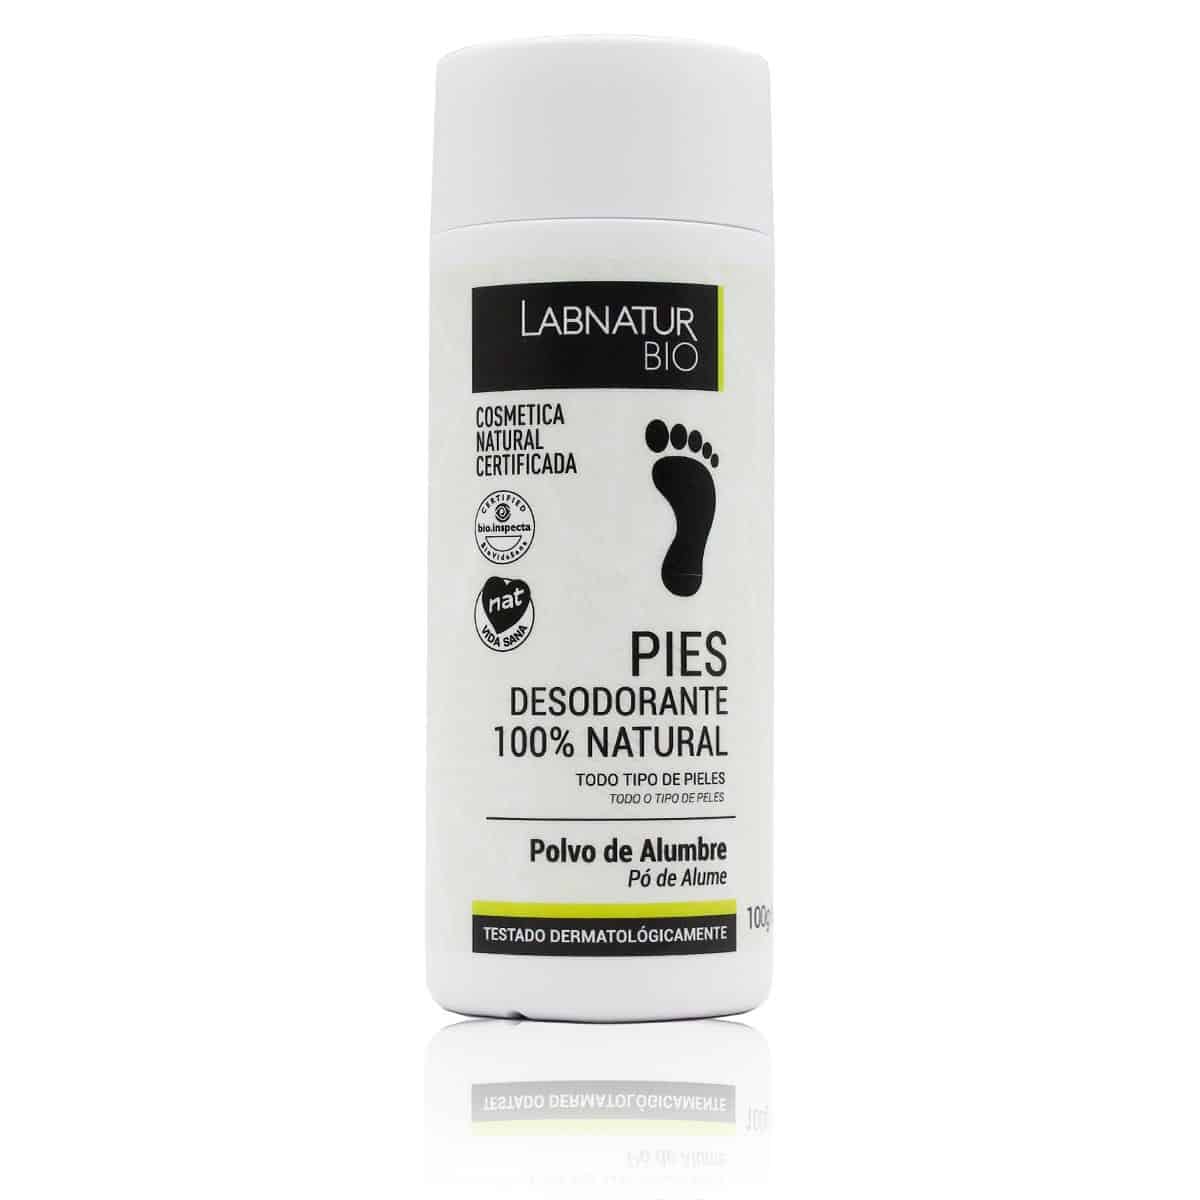 Comprar Desodorante Pies 100% natural Polvo de Alumbre Labnatur Bio